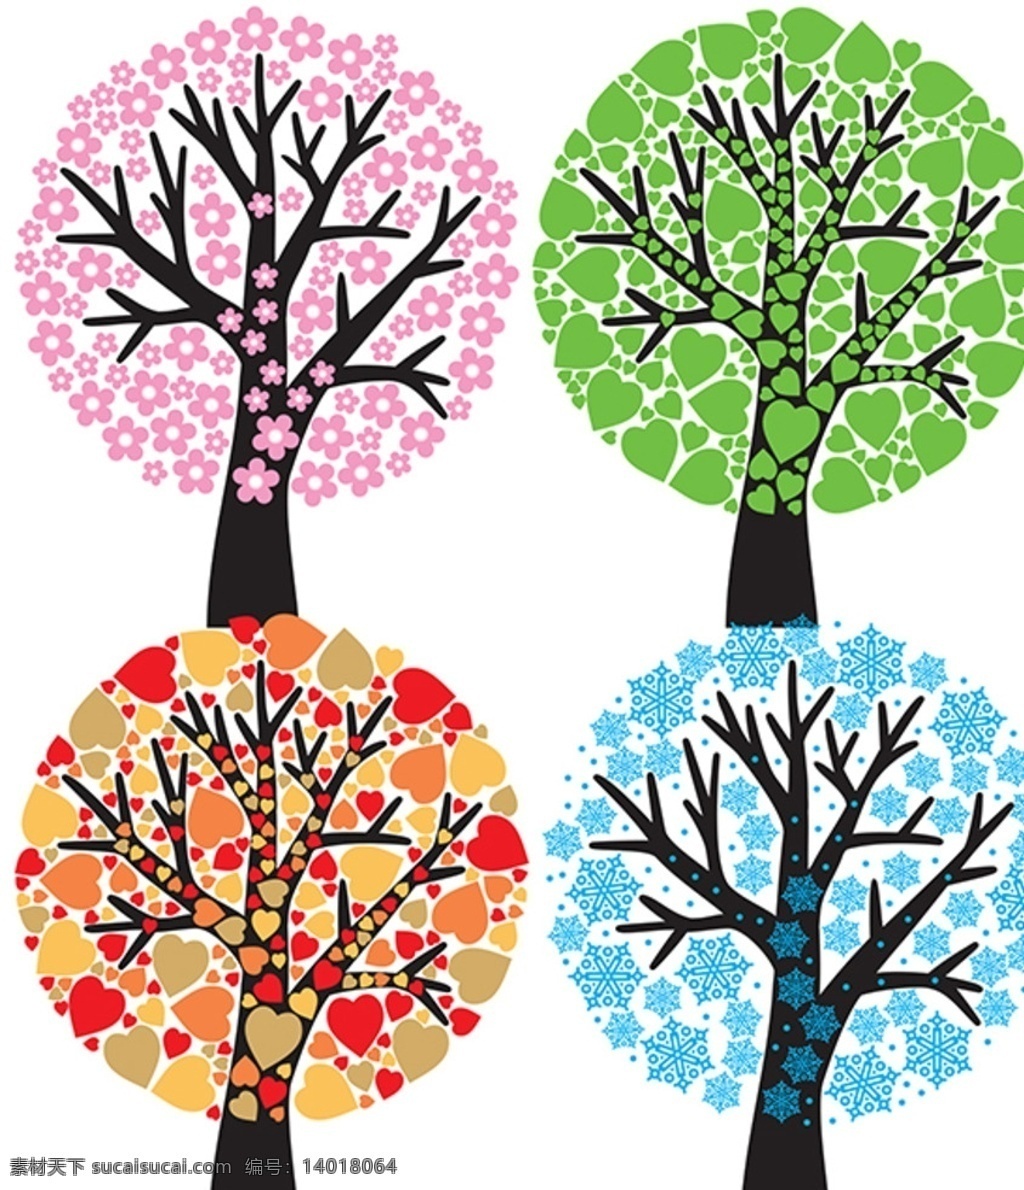 树素材 矢量树木 树木图案 树木插图 可爱树 抽象树形 心形树 环保素材 卡通素材 花卉植物 分层